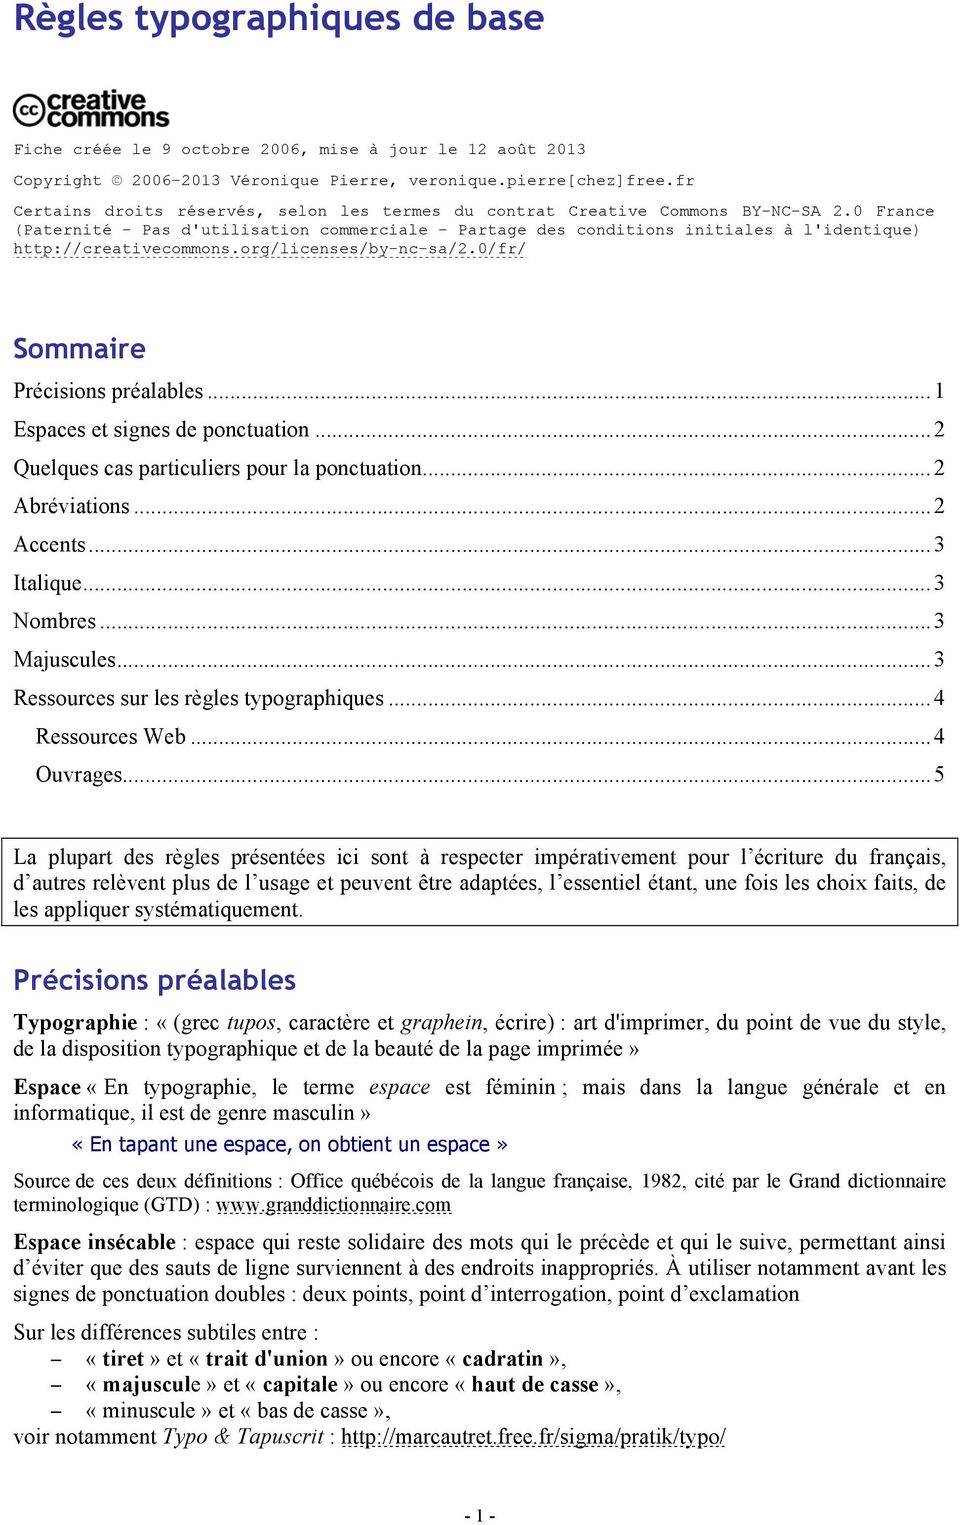 0 France (Paternité - Pas d'utilisation commerciale - Partage des conditions initiales à l'identique) http://creativecommons.org/licenses/by-nc-sa/2.0/fr/ Sommaire Précisions préalables.